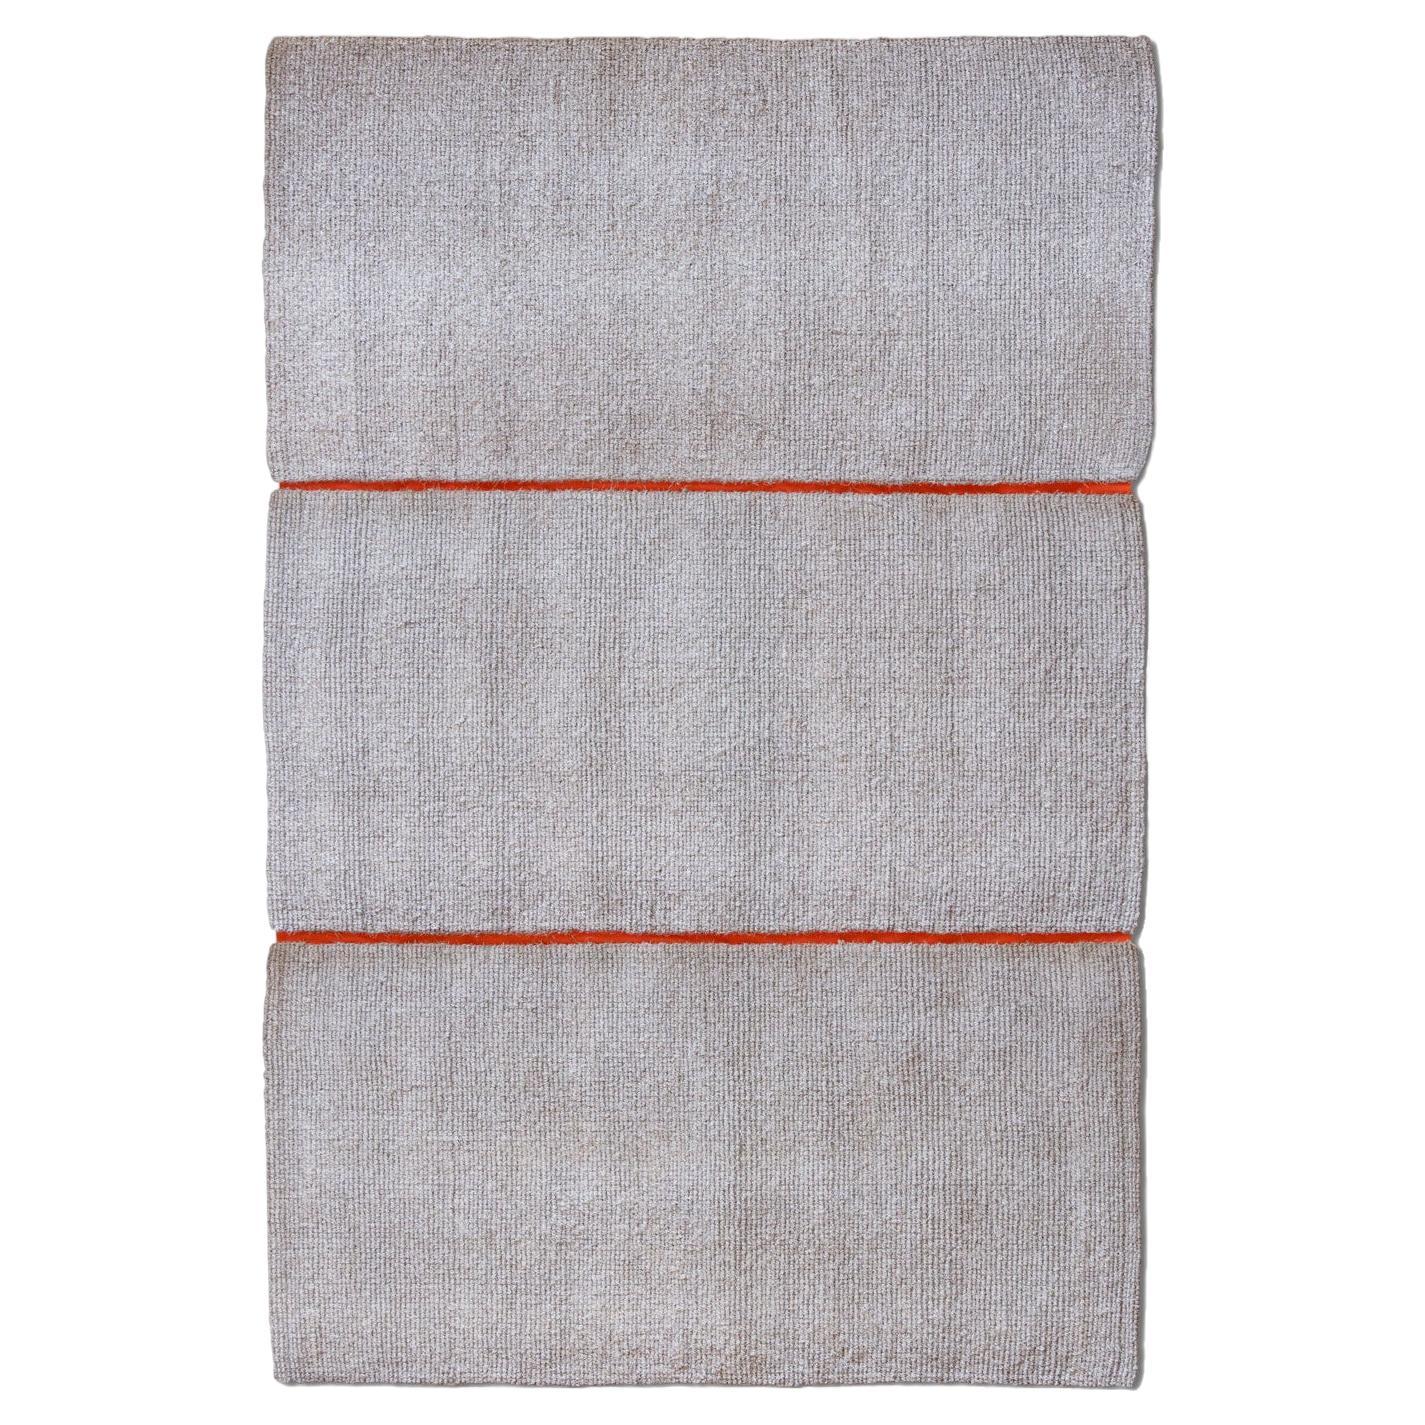 Modularer natürlicher weißer Kokosnussholz-Teppich für den Außenbereich von Deanna Comellini 195x285 cm